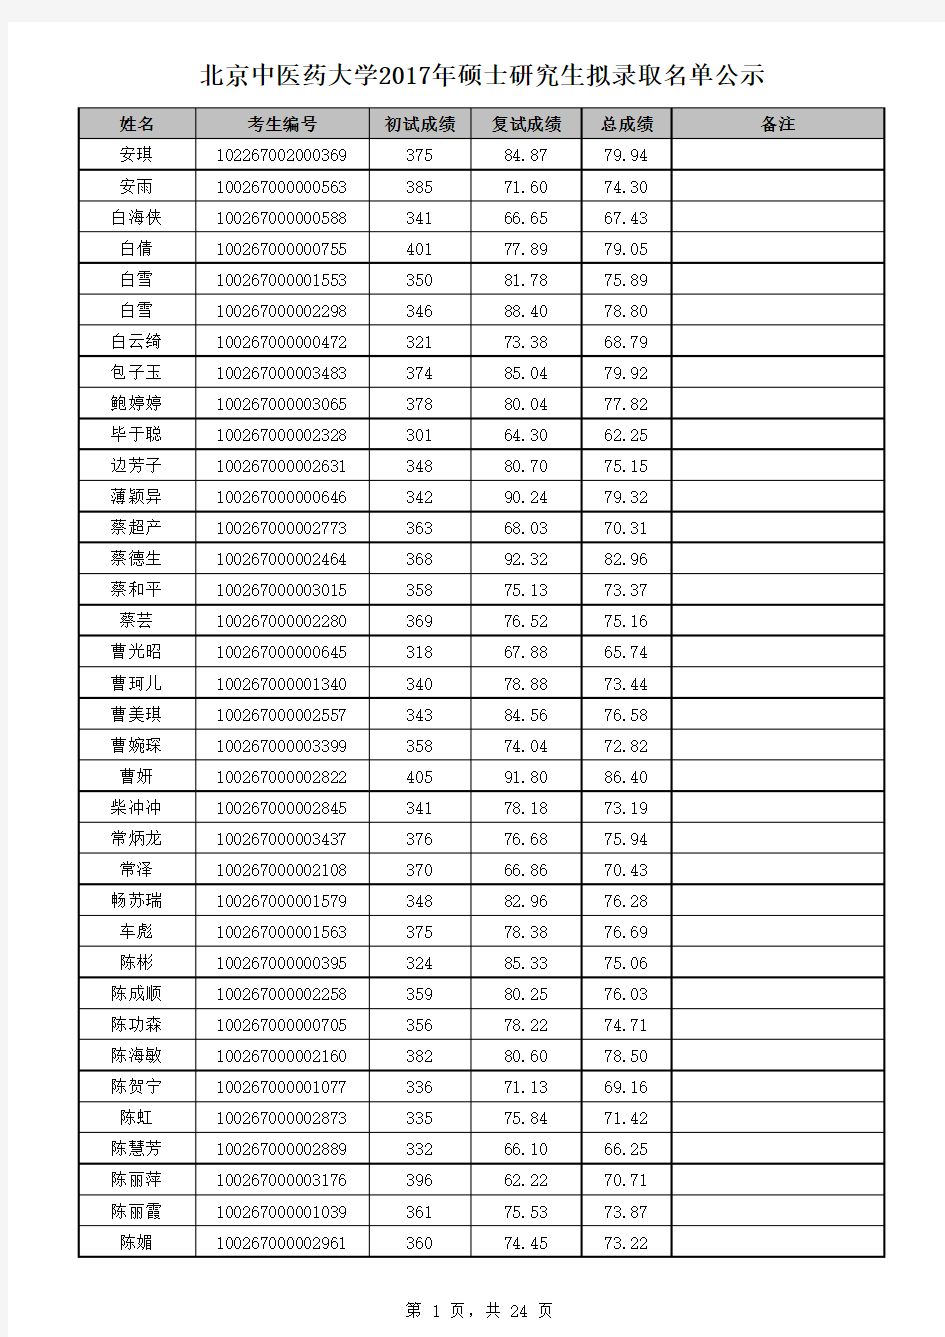 2017年北中医研究生名单公示 (1)